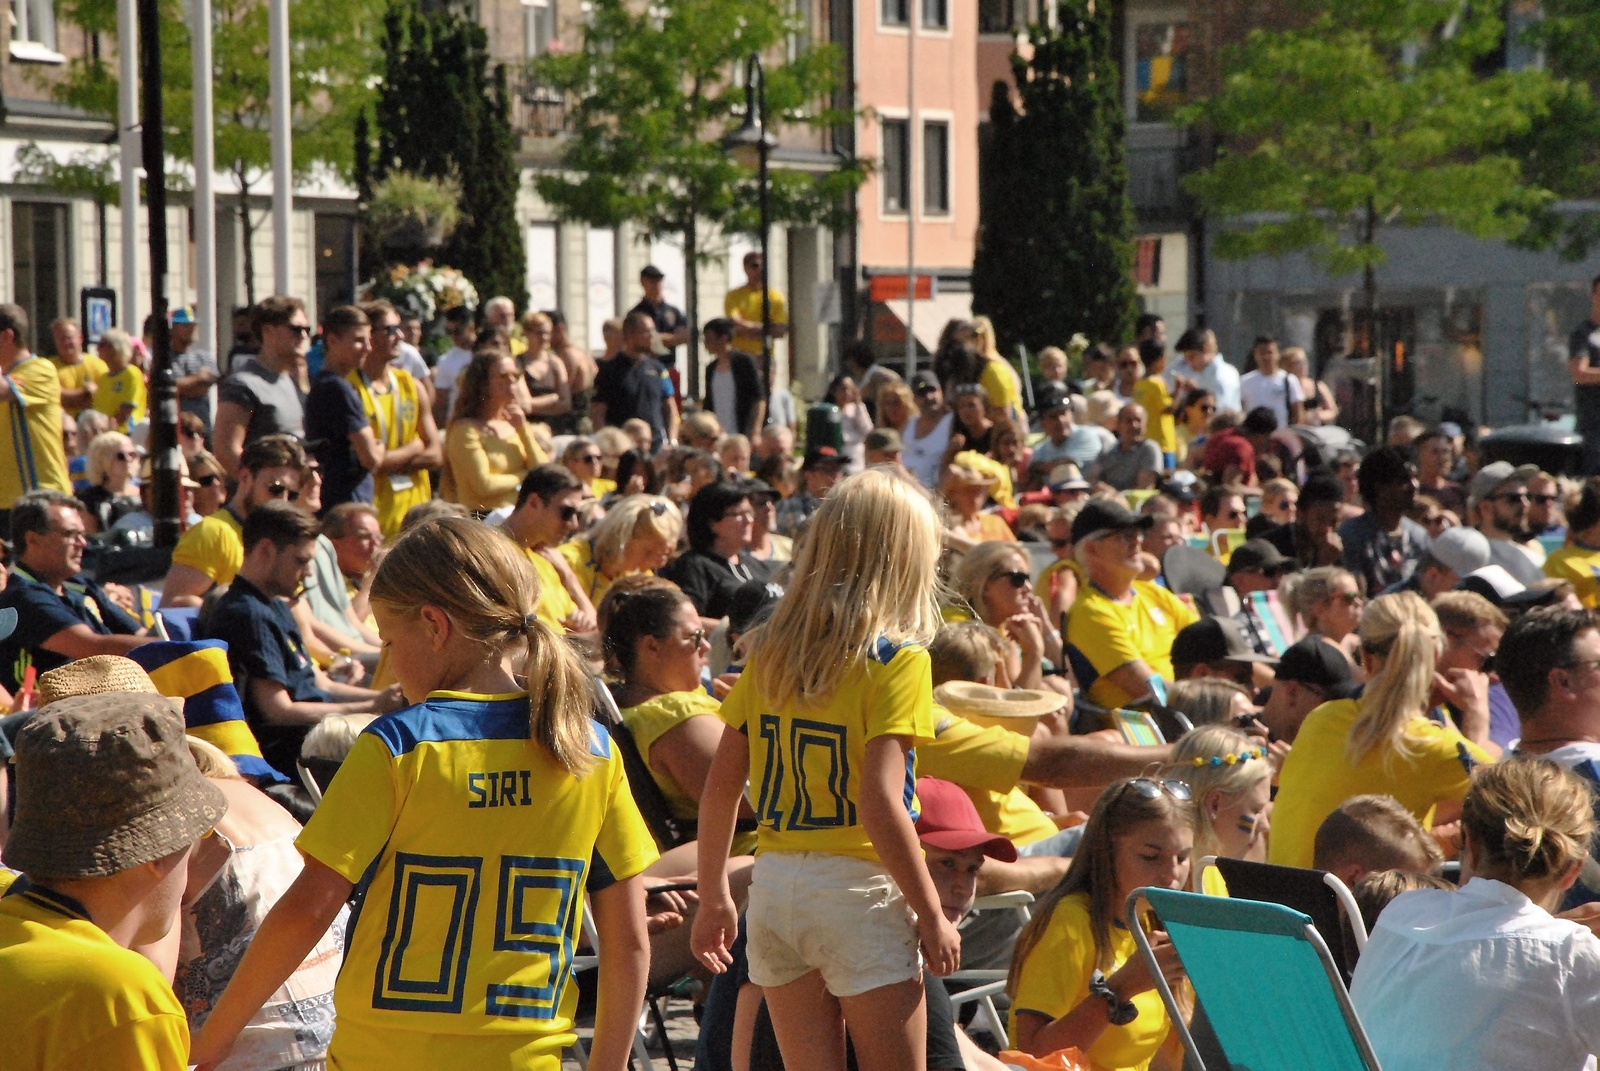 Ett gult folkhav att supportrar innan startsignalen hade gått.
foto: bella Bryngelson